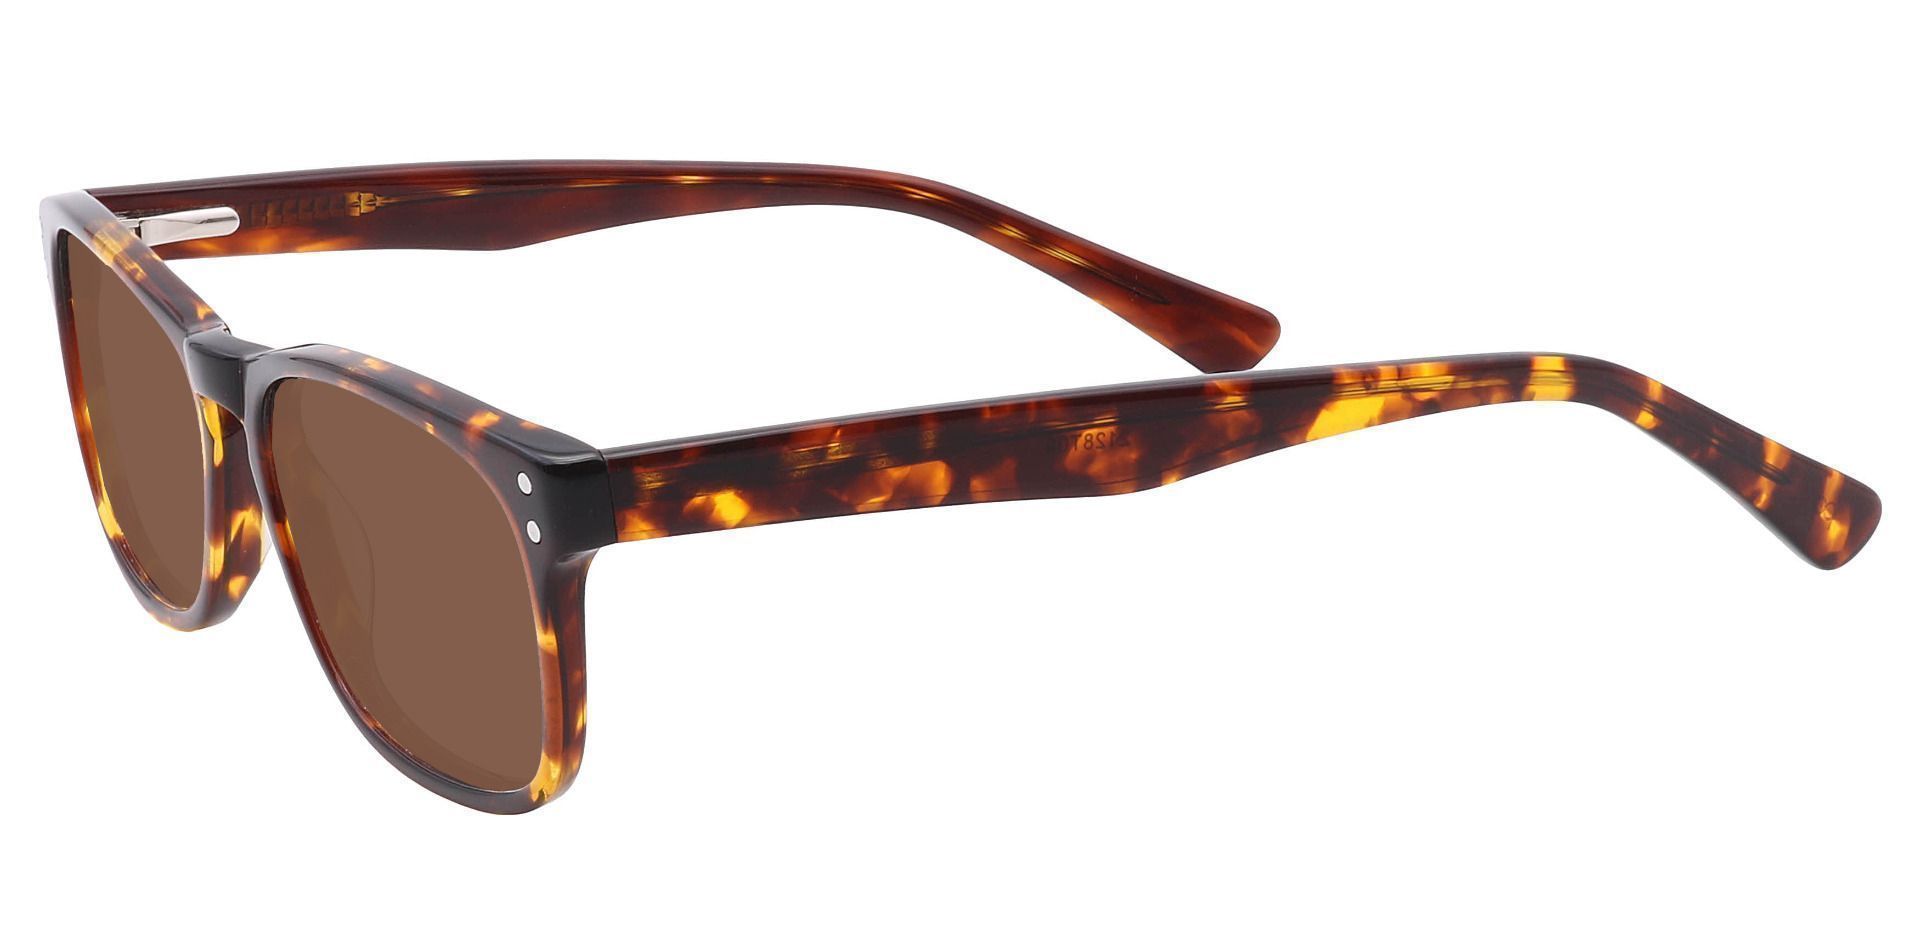 Morris Rectangle Progressive Sunglasses - Tortoise Frame With Brown Lenses